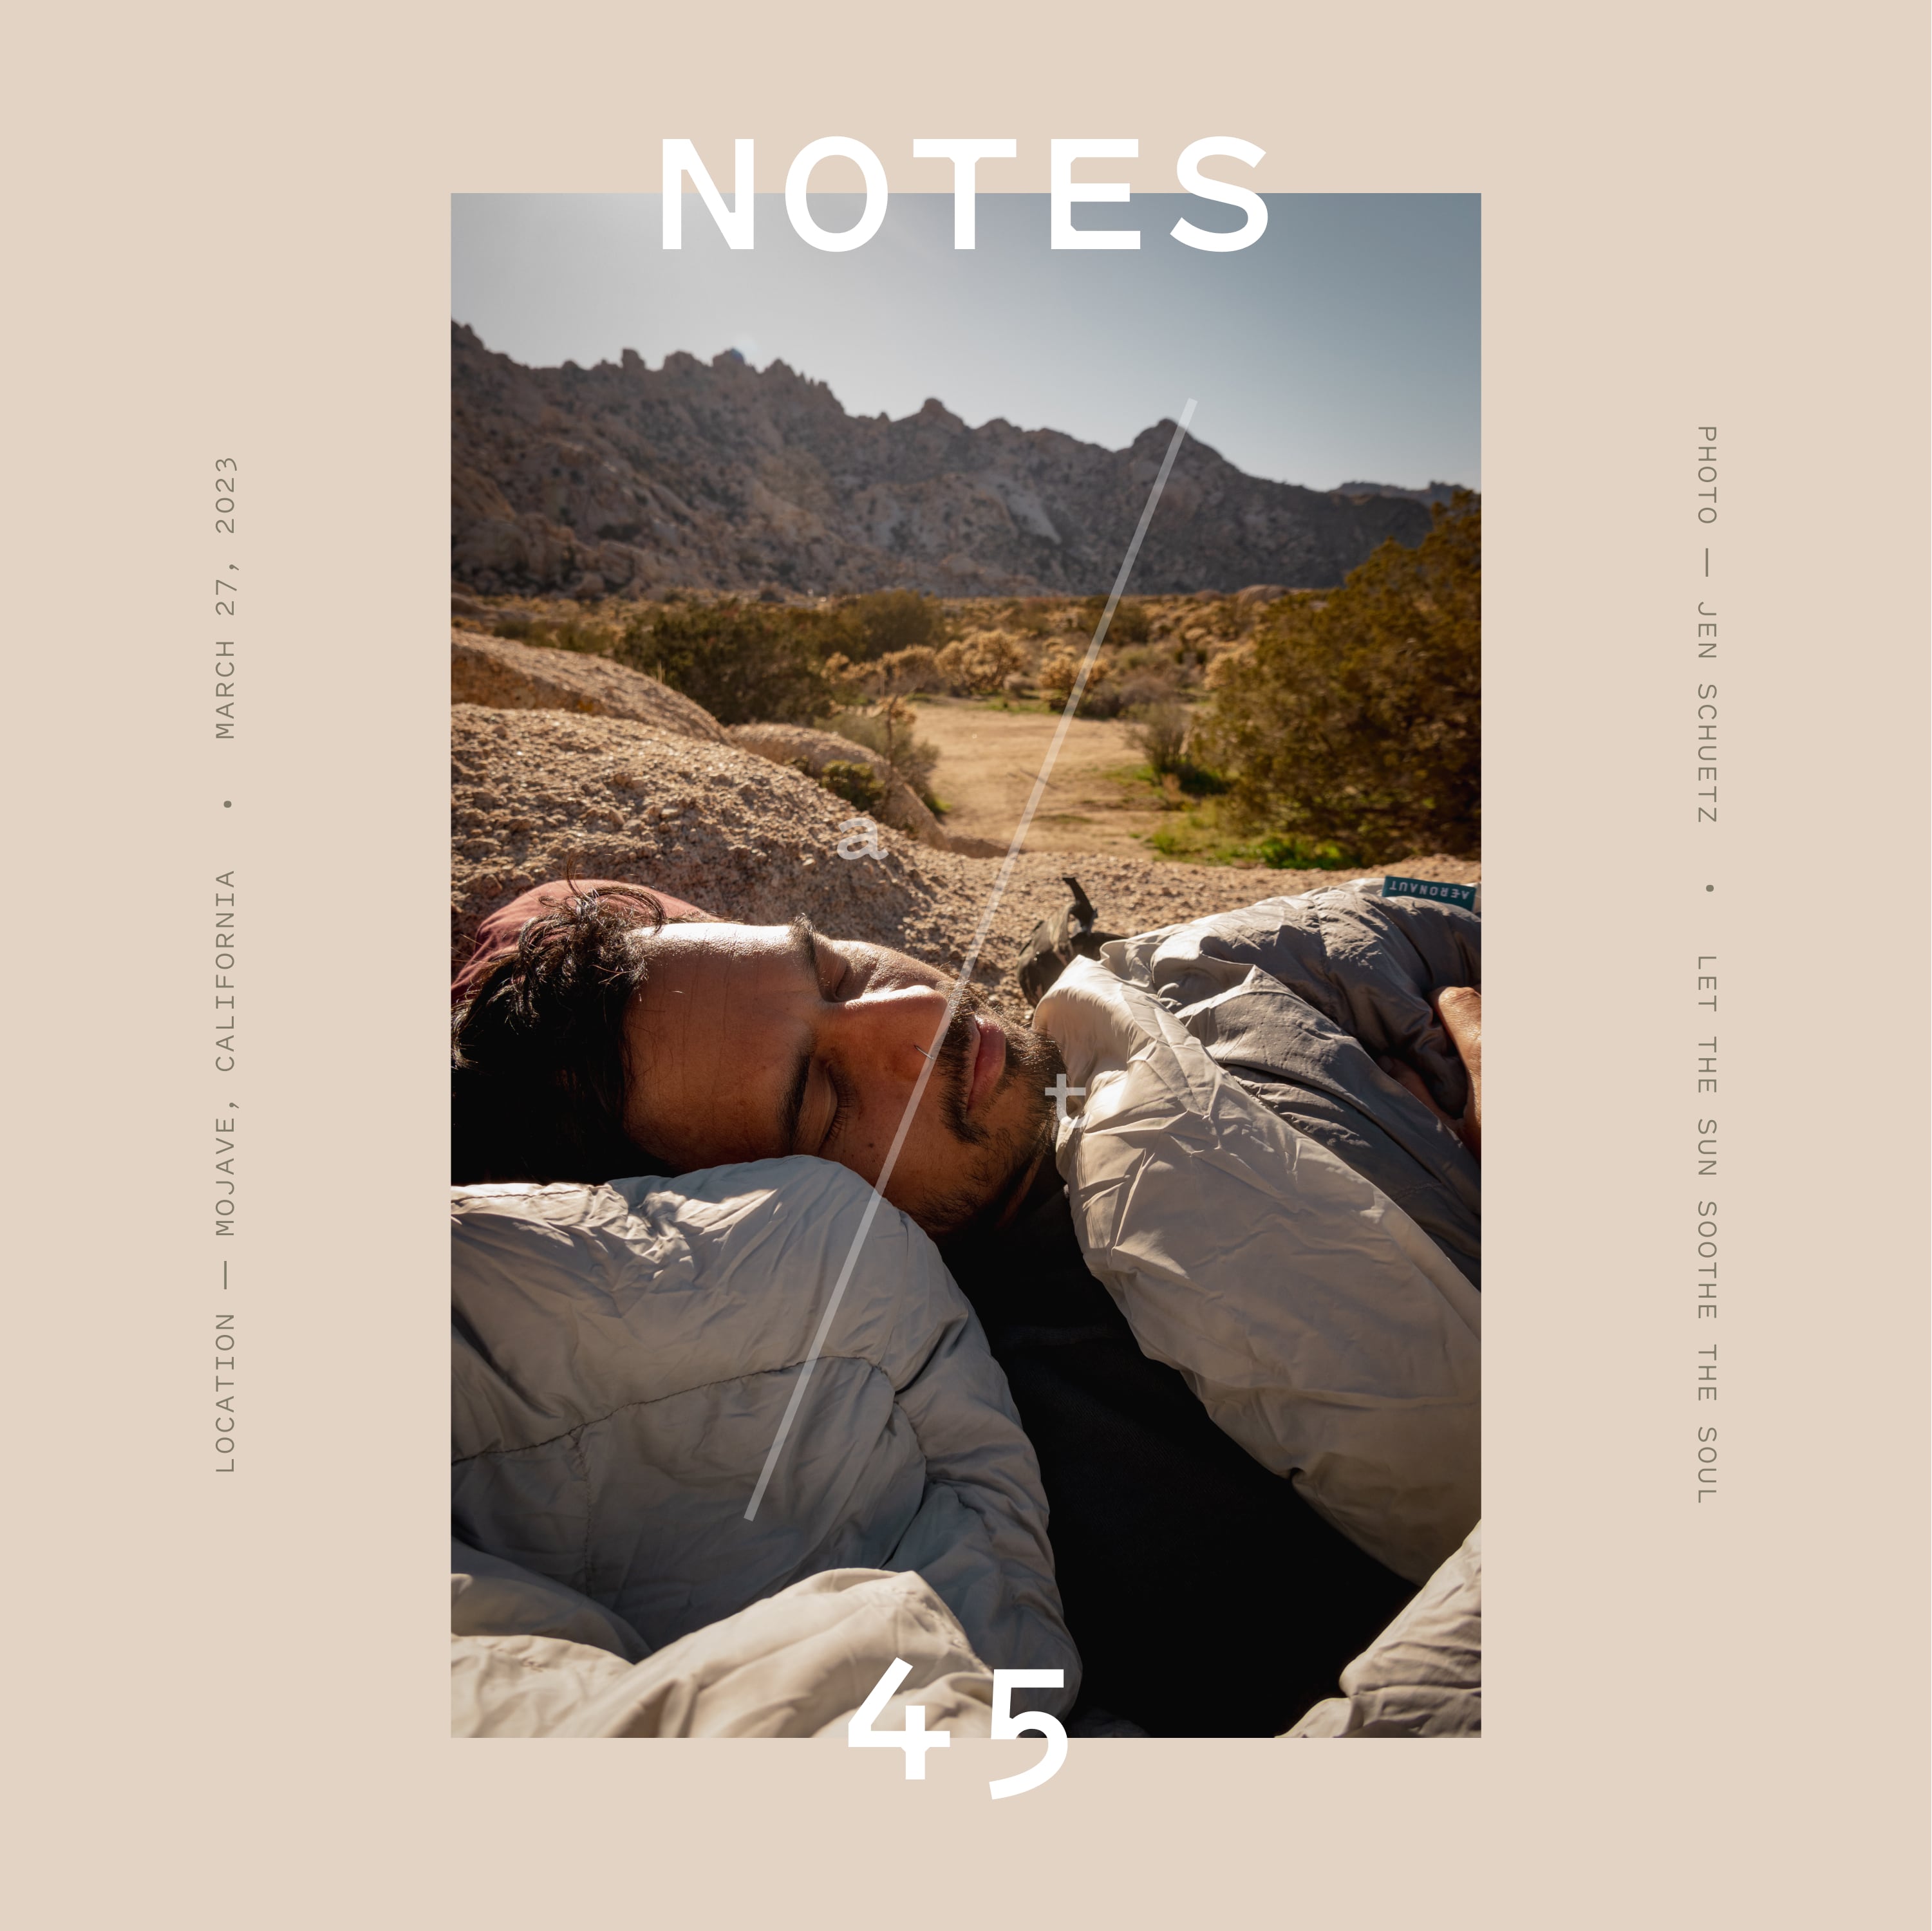 Notes at 45, Mojave, California, USA